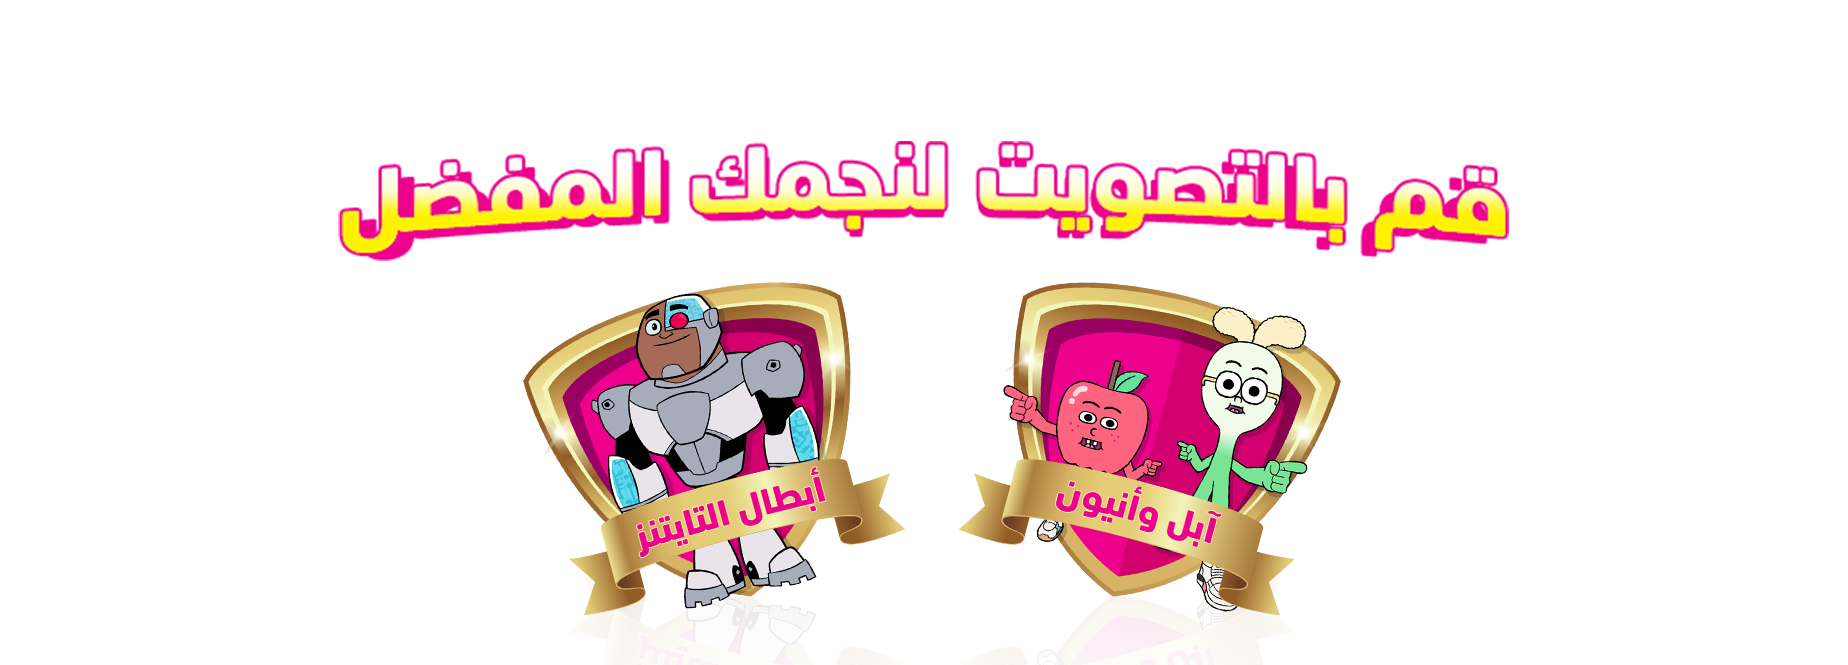 تصويت arabic.com/star cartoon network معلومات عن